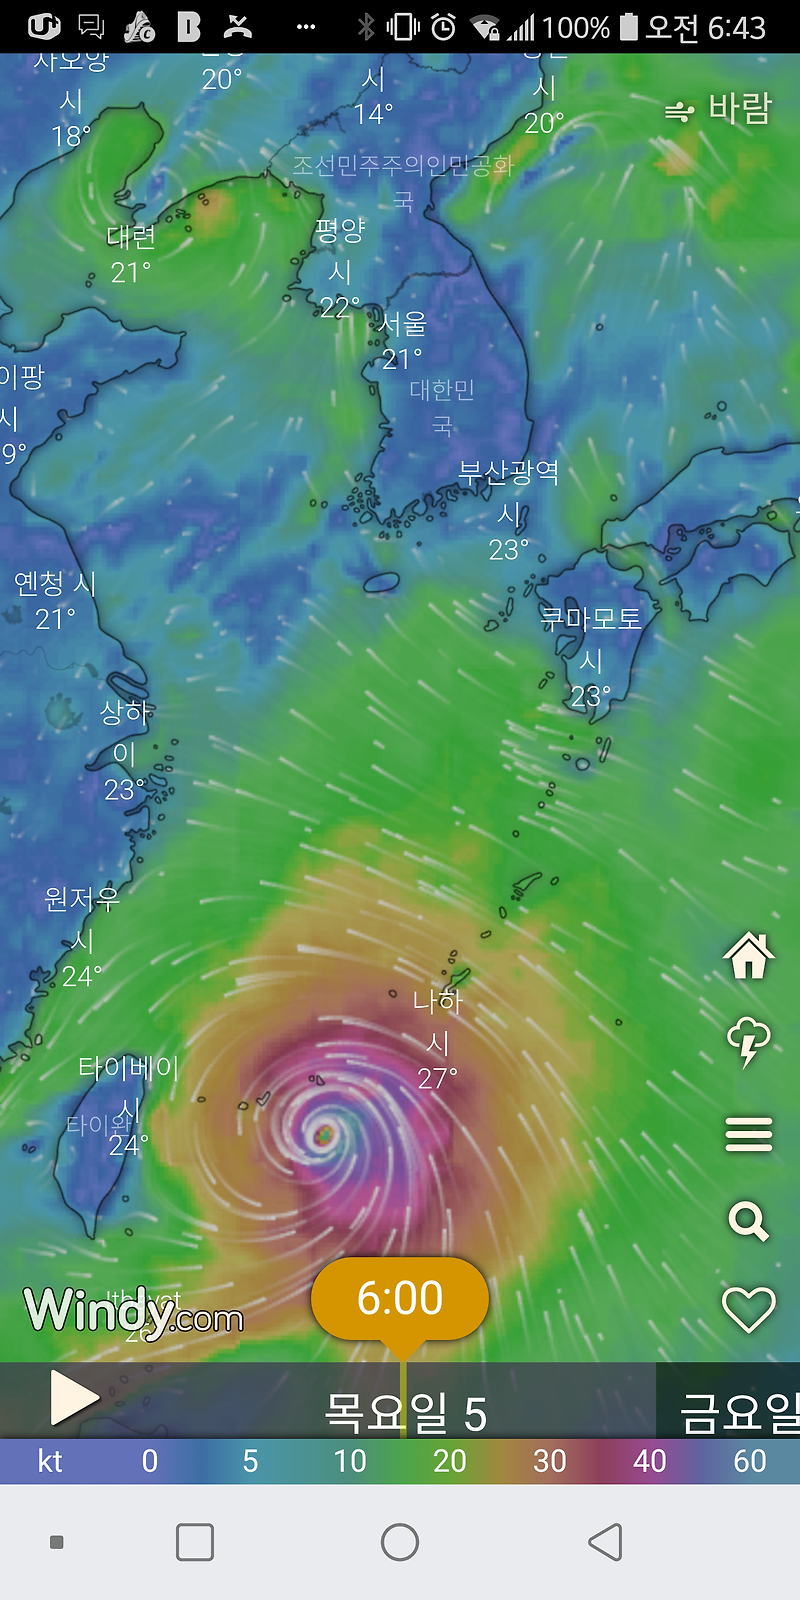 대형 태풍 링링은 한반도로 향하고 허리케인 도리안은 미국 동부를 강타하다.